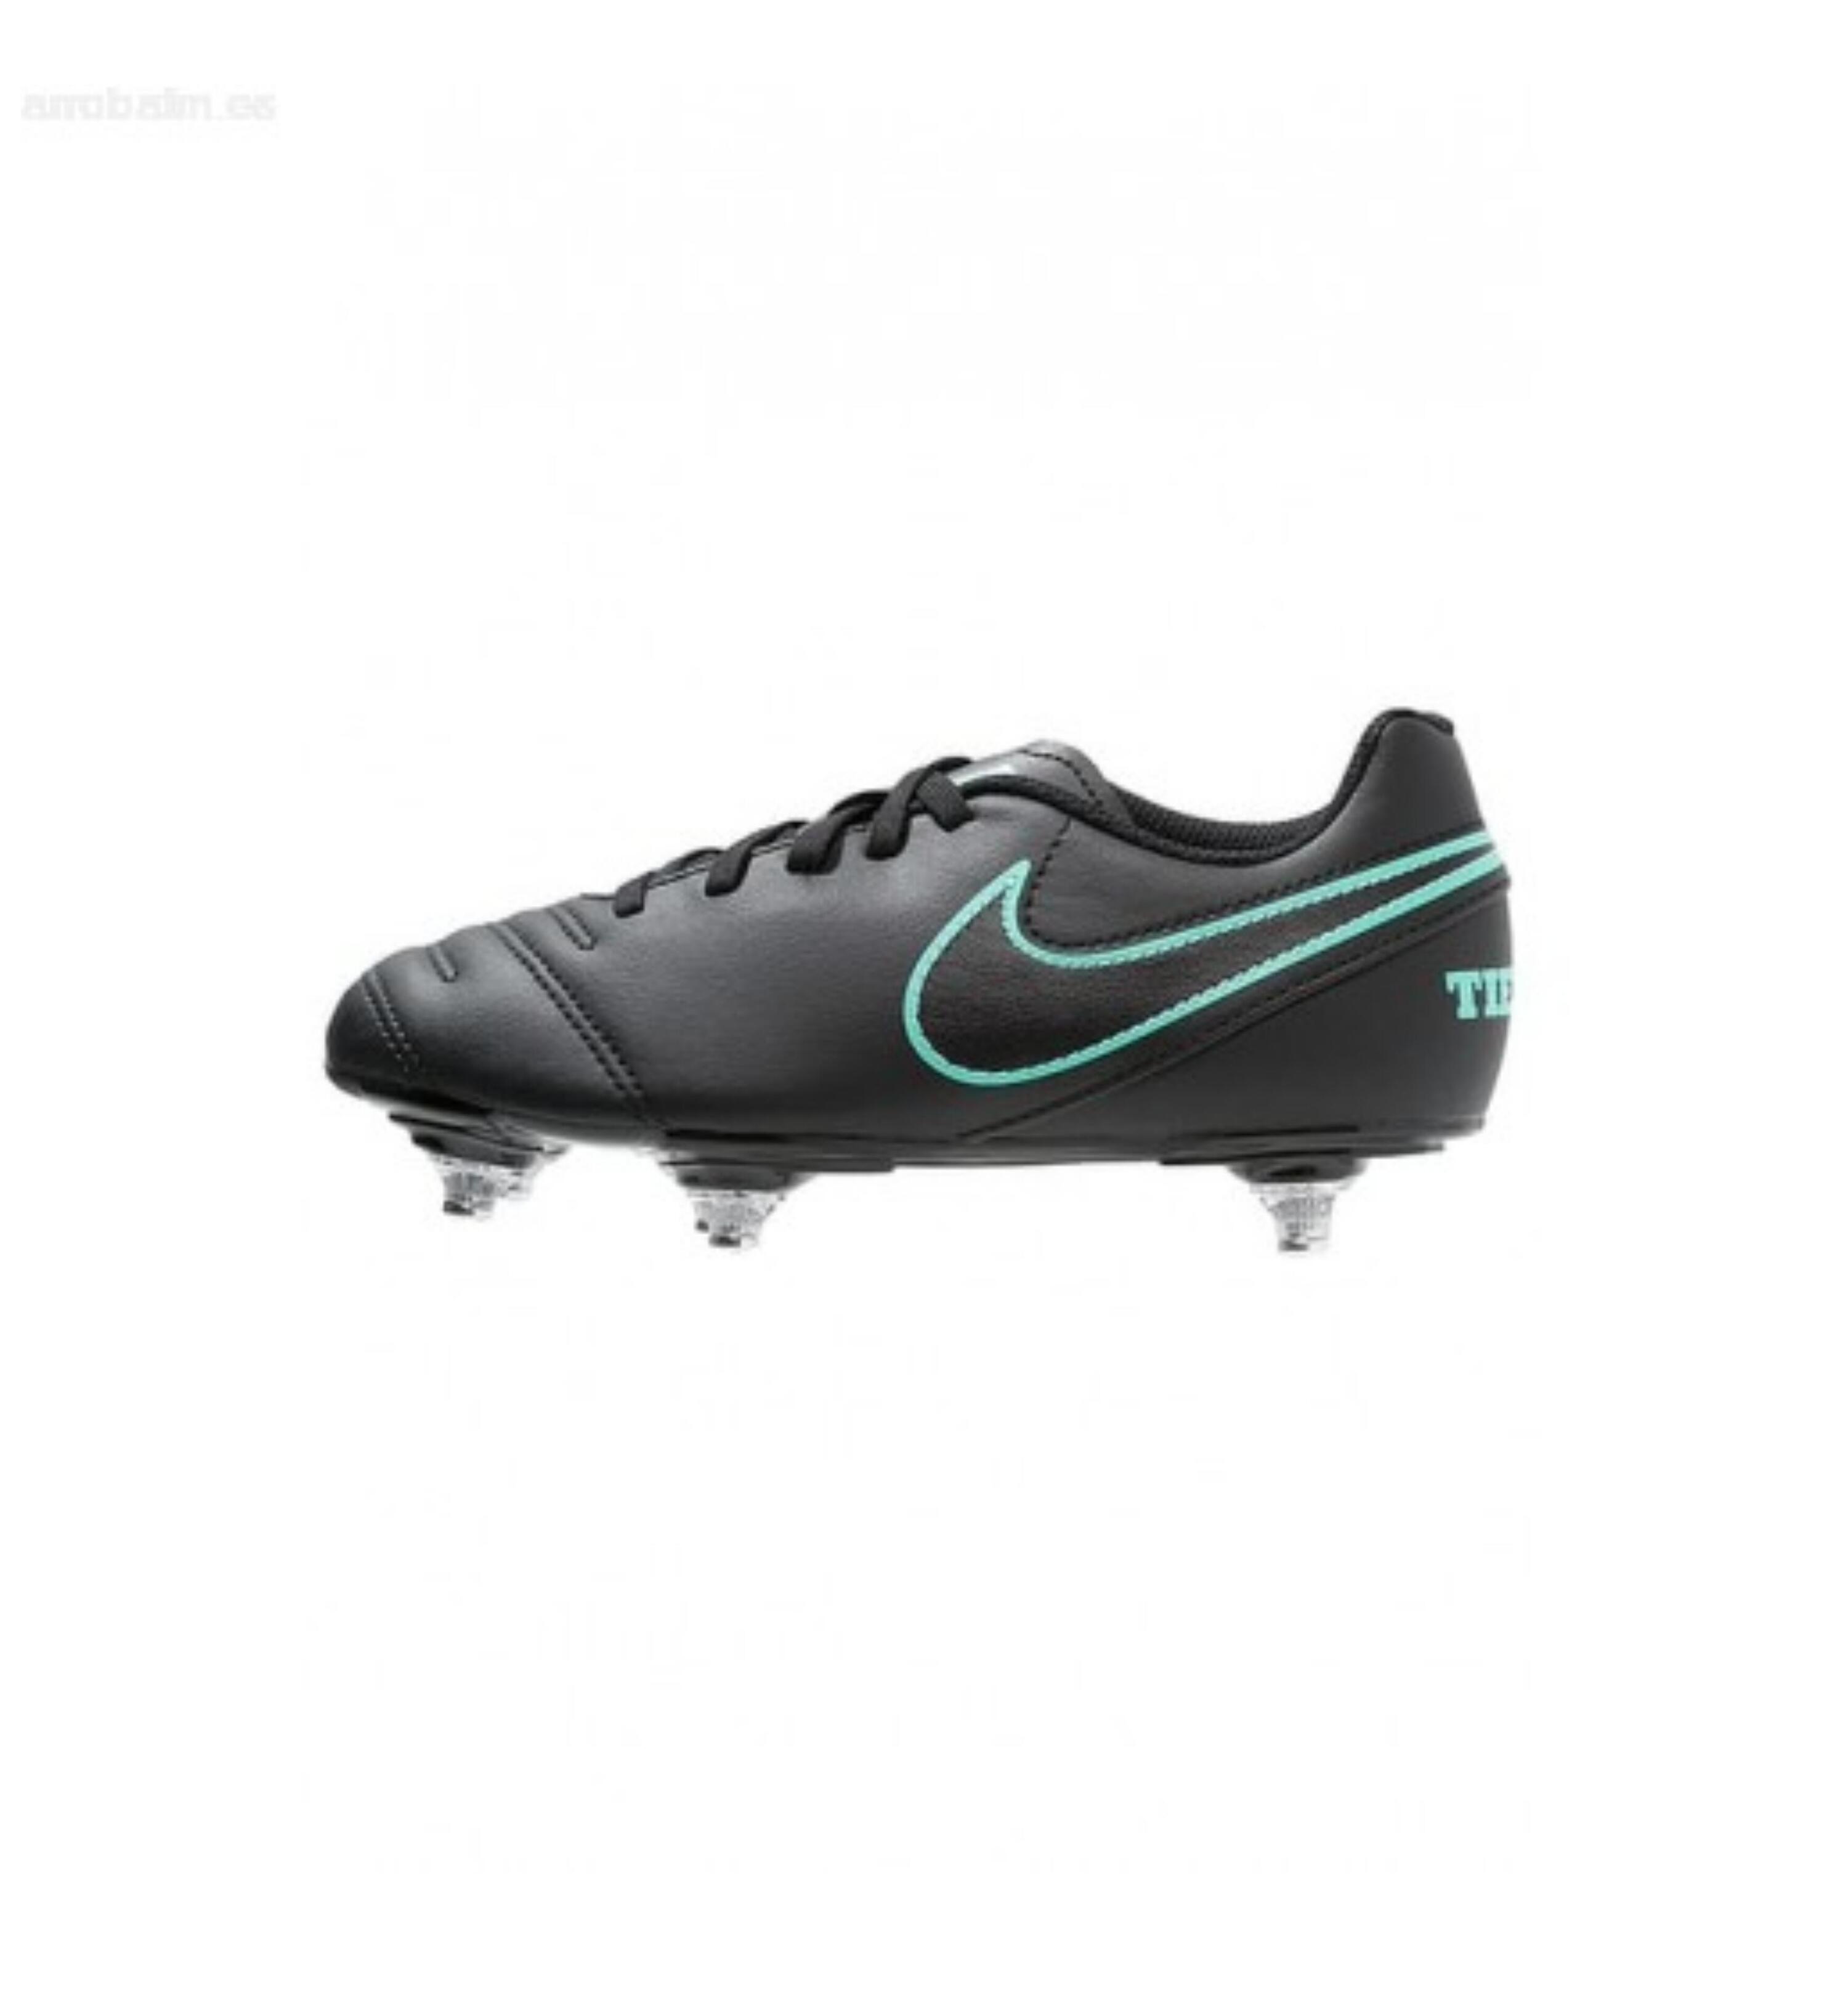 Tiempo Rio SG Kids' Football Boots - Black/Green 1/1